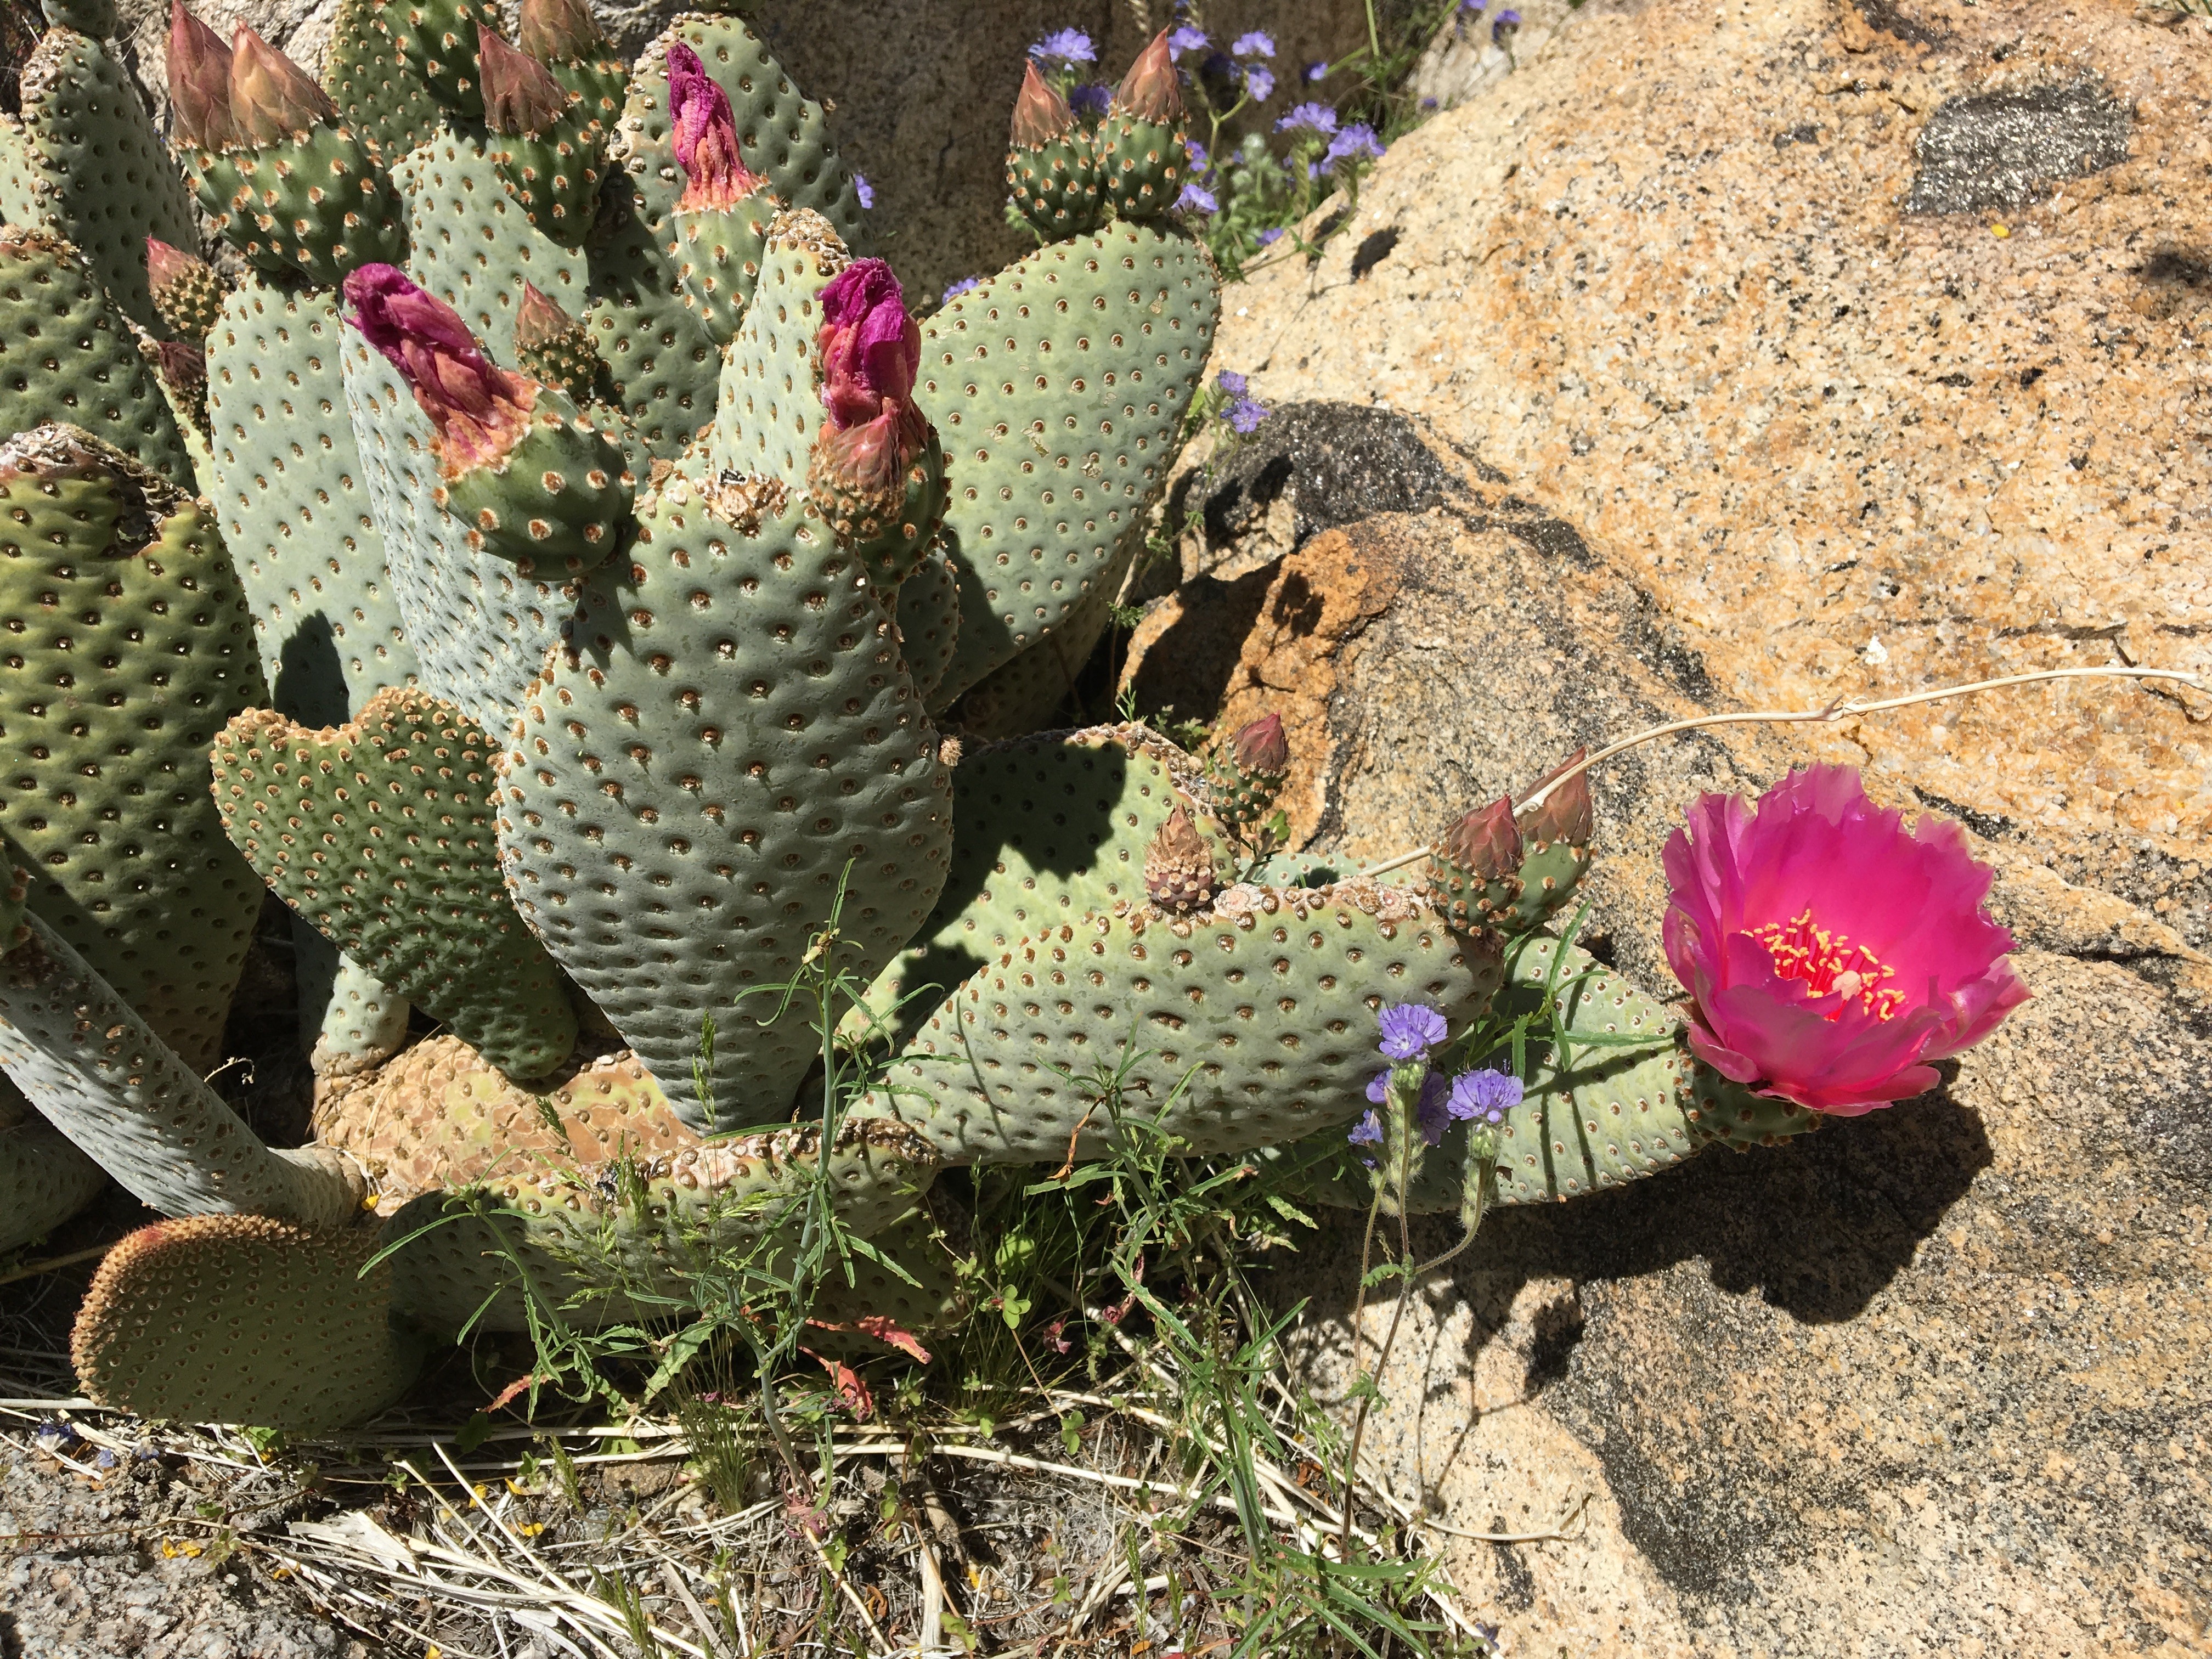 Bevertail Cactus in bloom In Anza Borrego